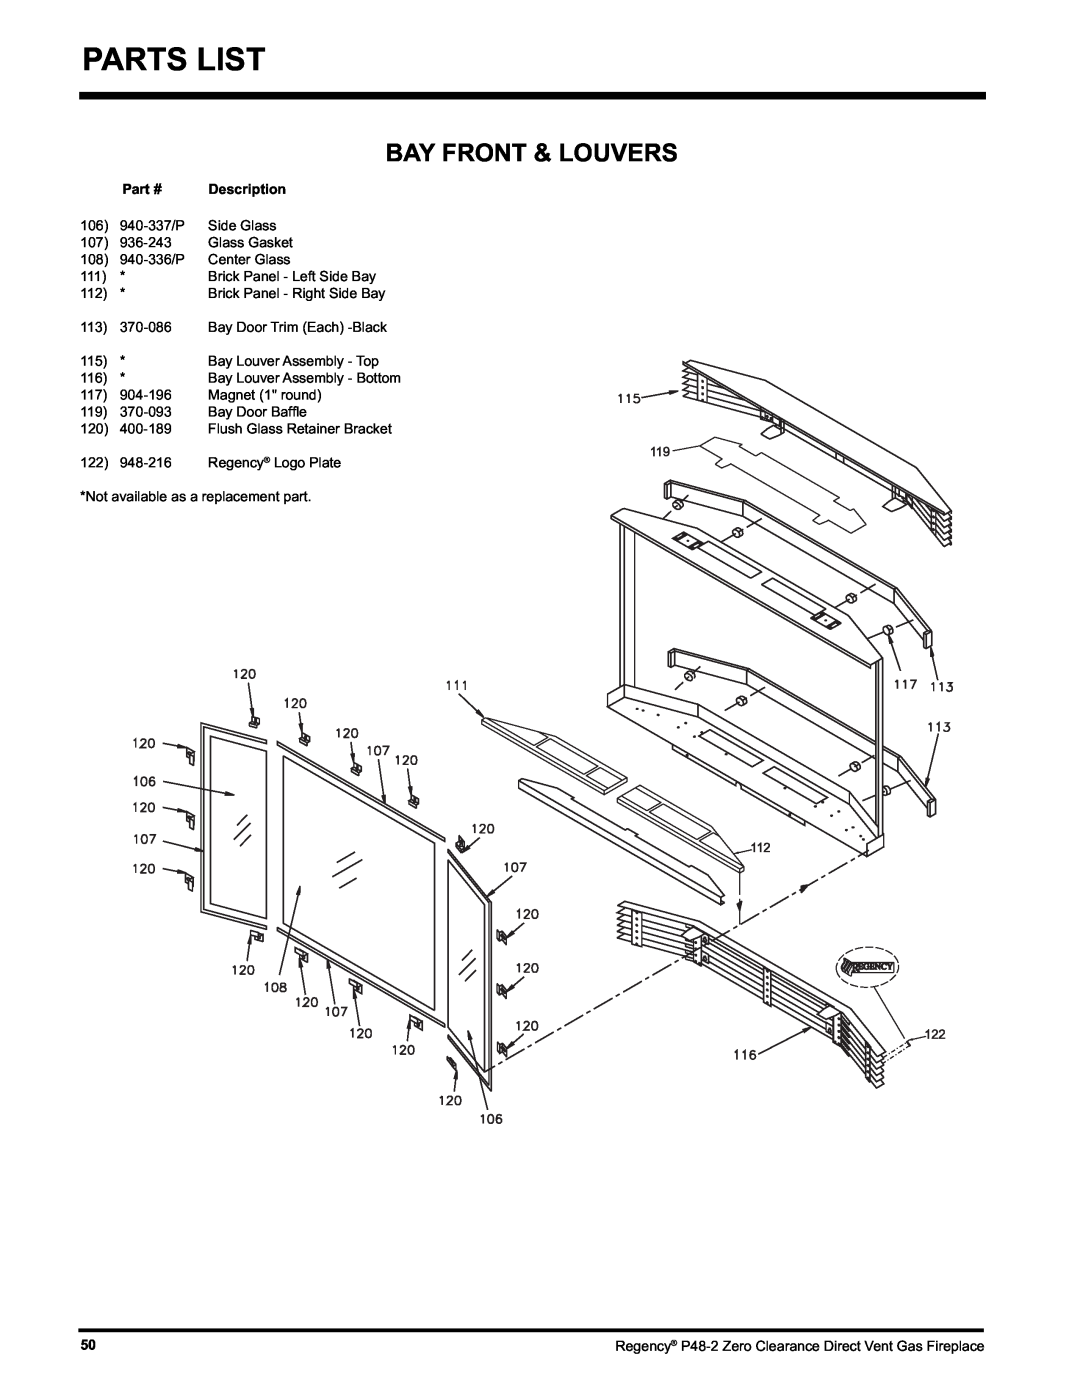 Regency P48-2 installation manual Parts List, Bay Front & Louvers, Part #, Description 